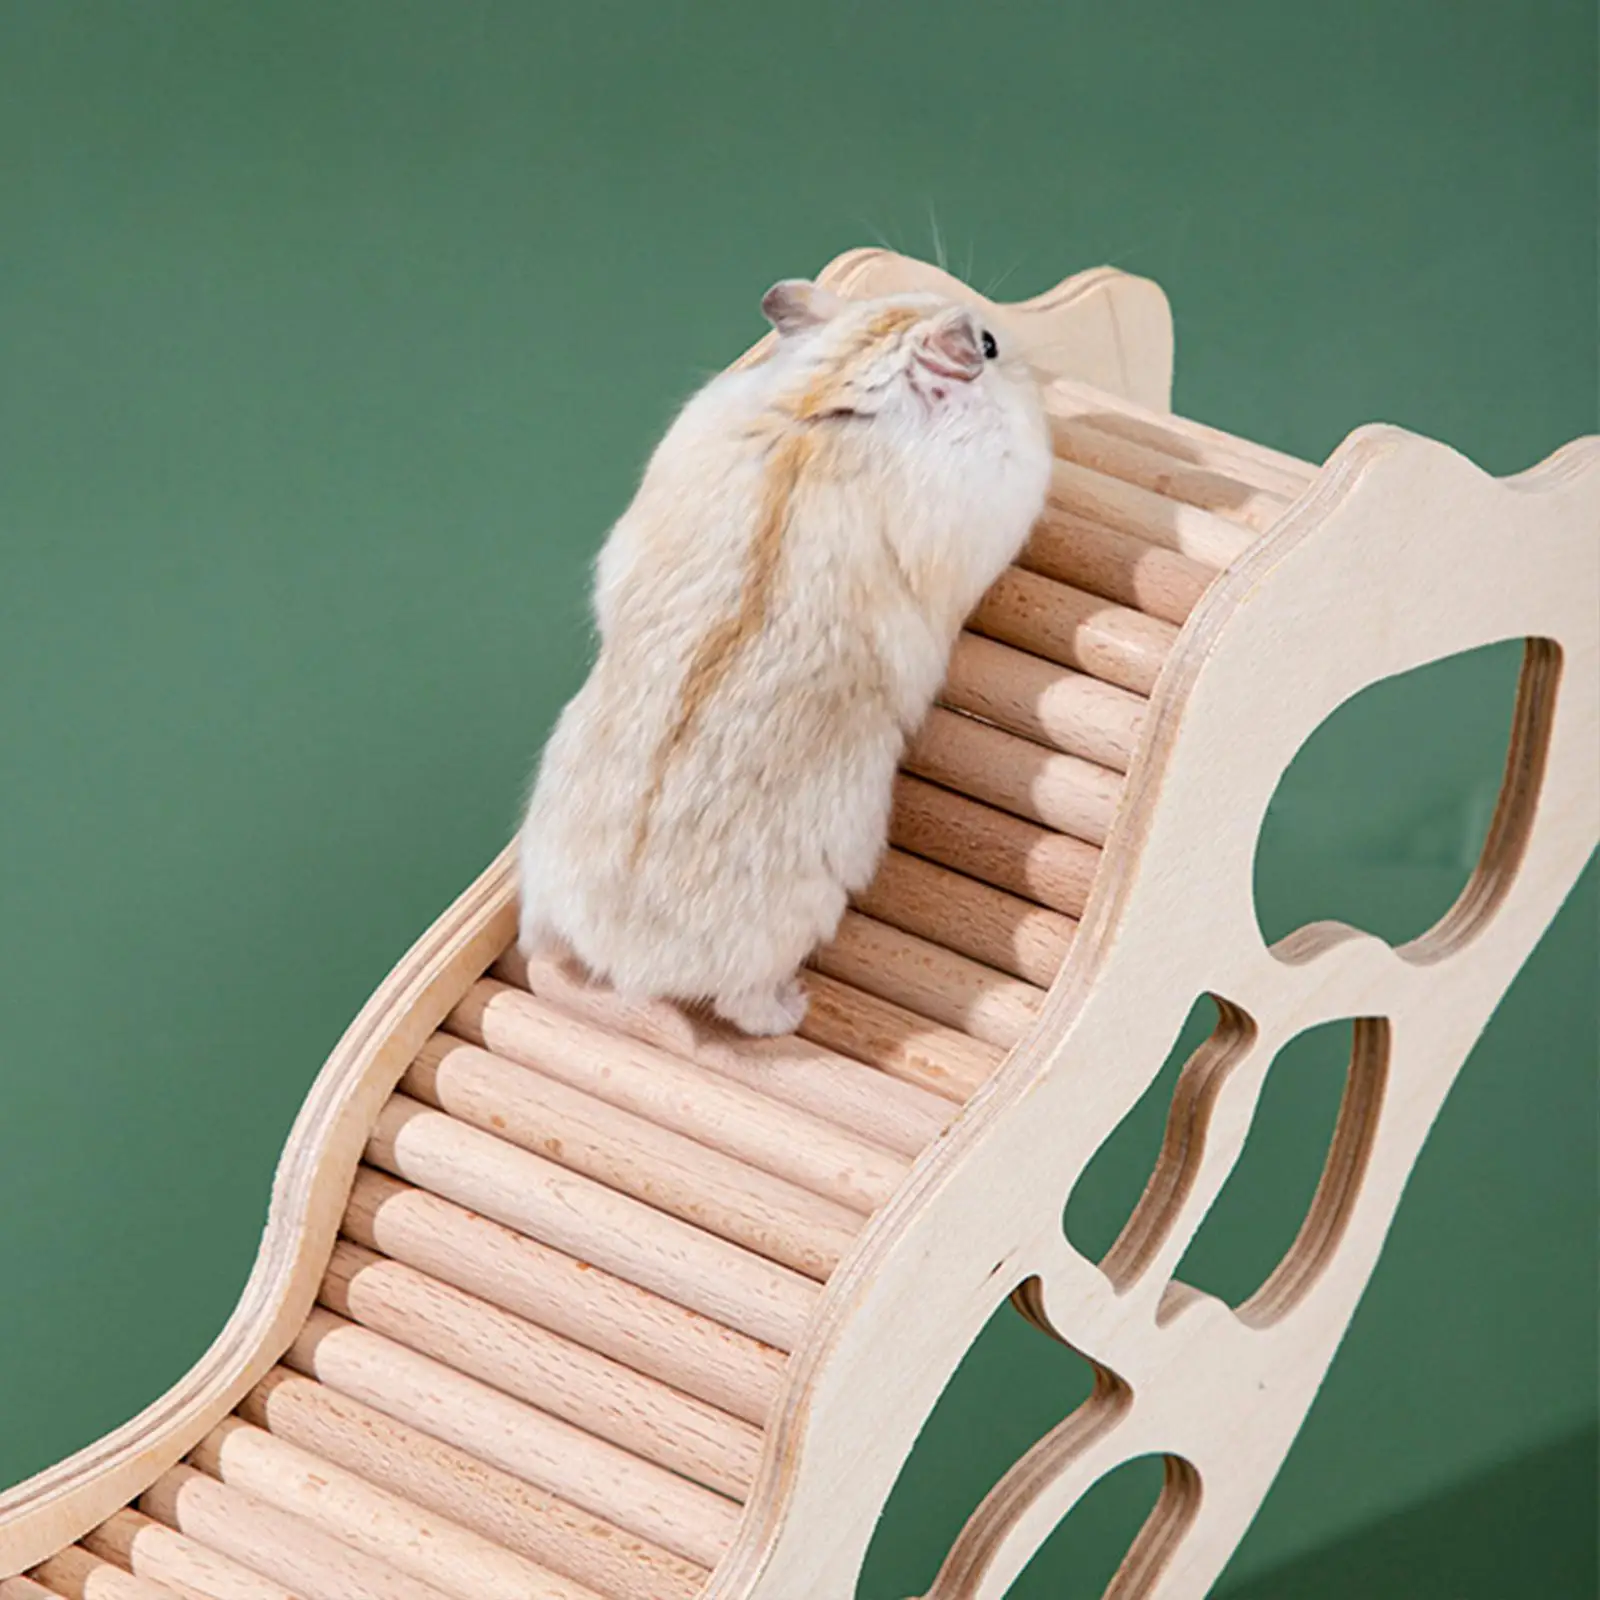 Hamster Hideout Climbing Ladder Wooden Underground Tunnel Activity Platform Small animals Hut Cage Decor Running Toy